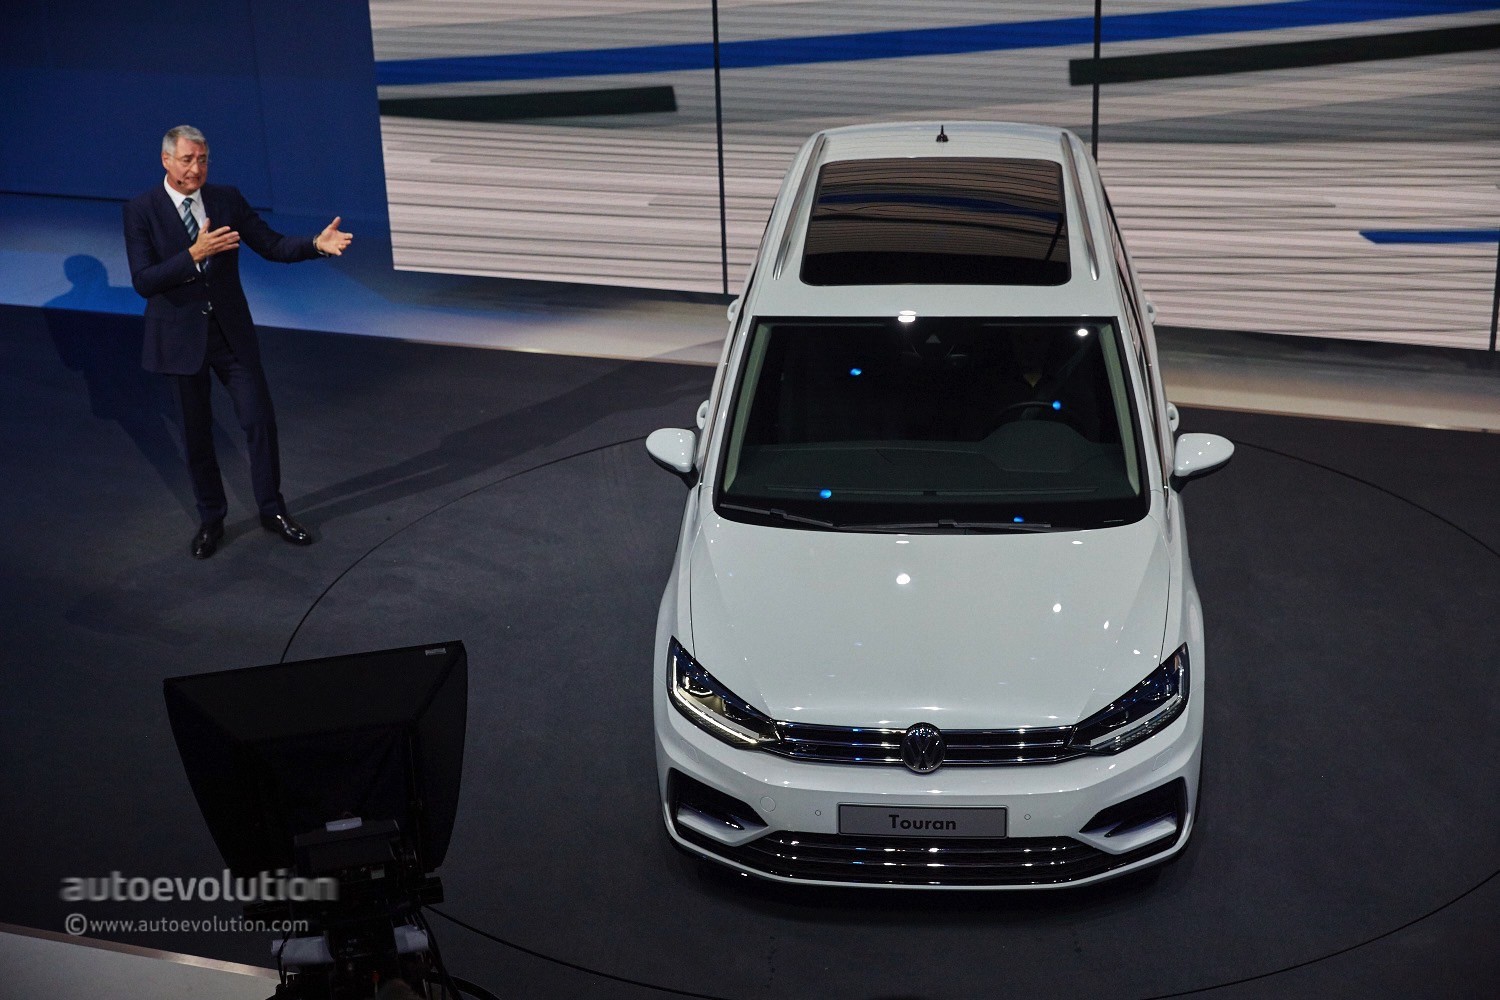 2016 Volkswagen Routan Redesign | Cars in 2016 Live Autos